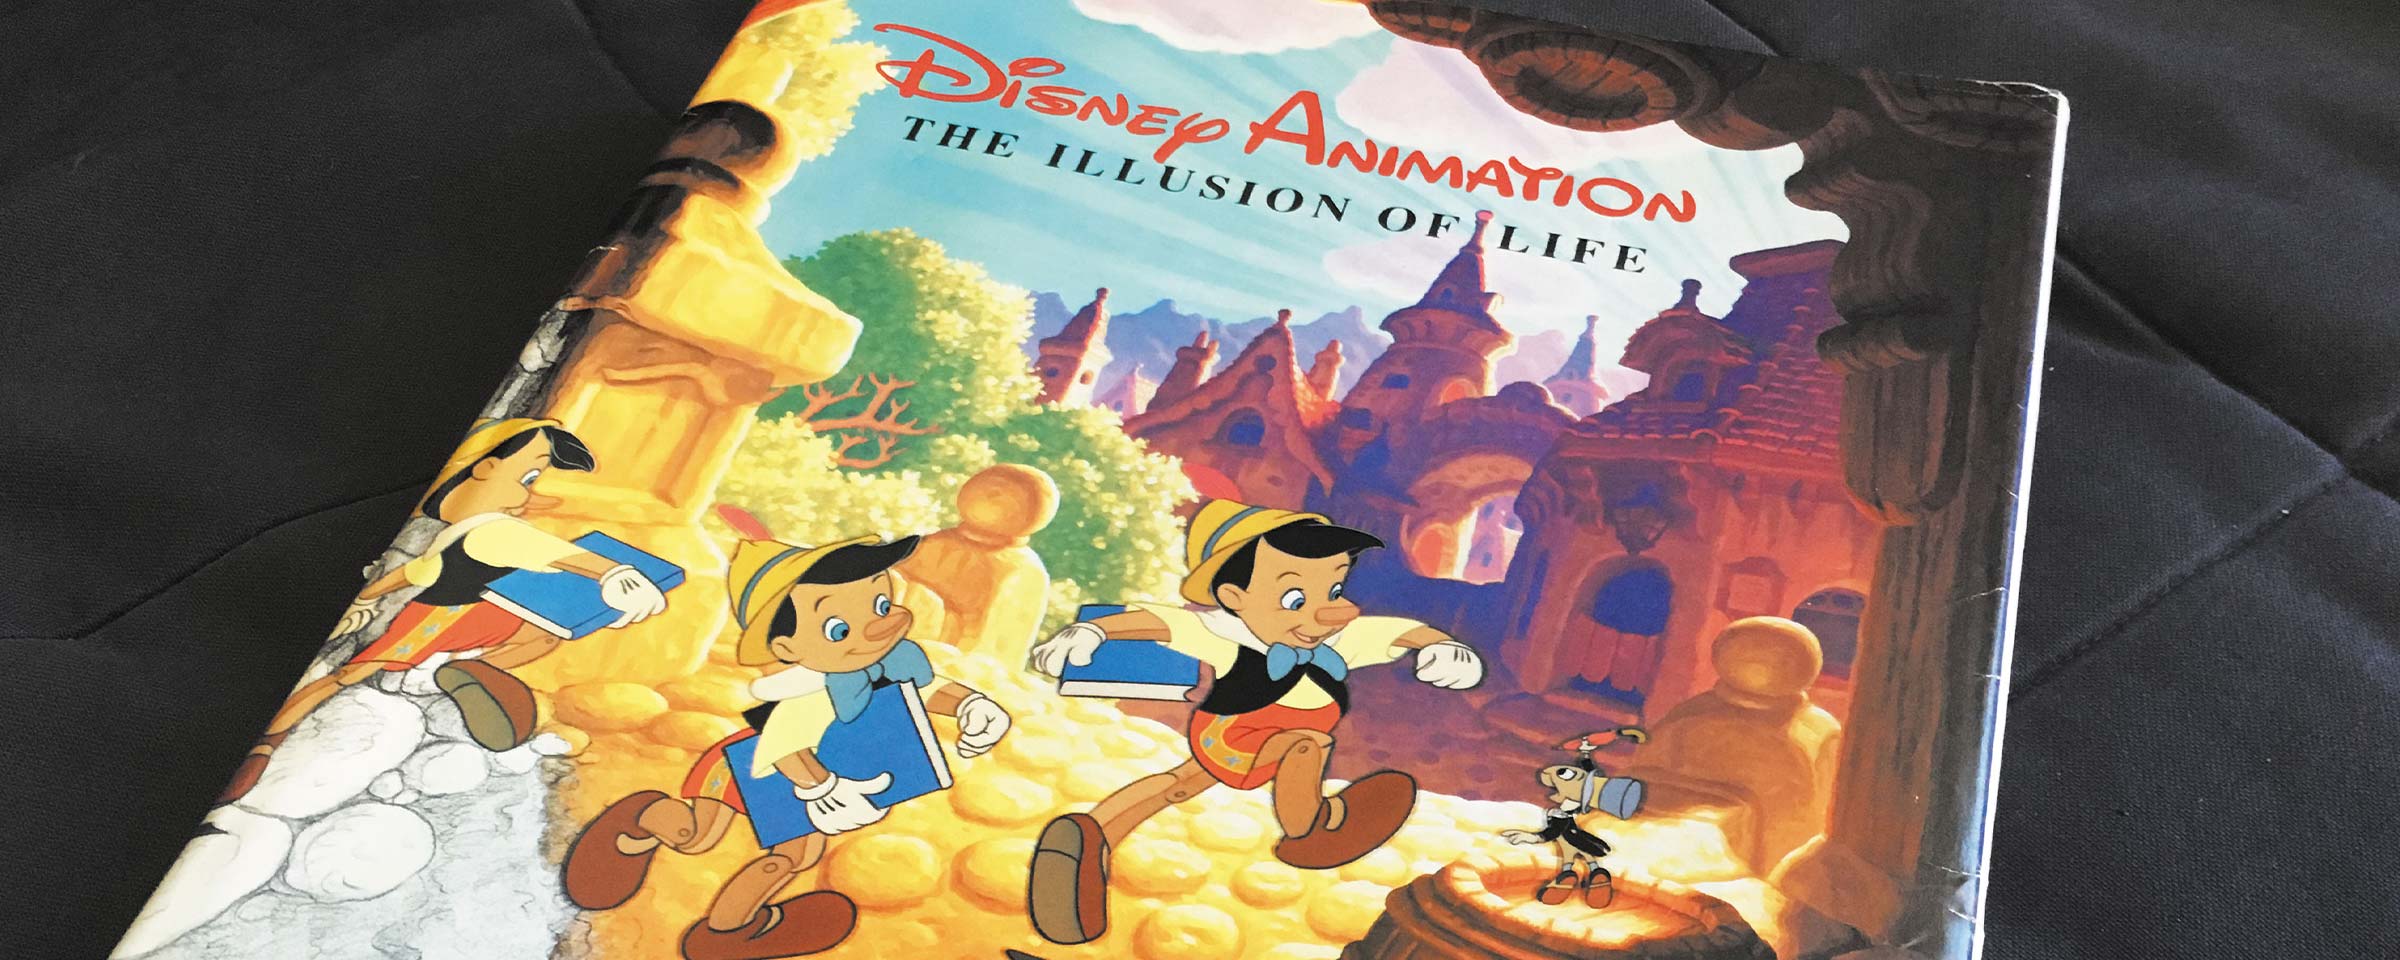 Buchcover von The Illusion of Life von Disney